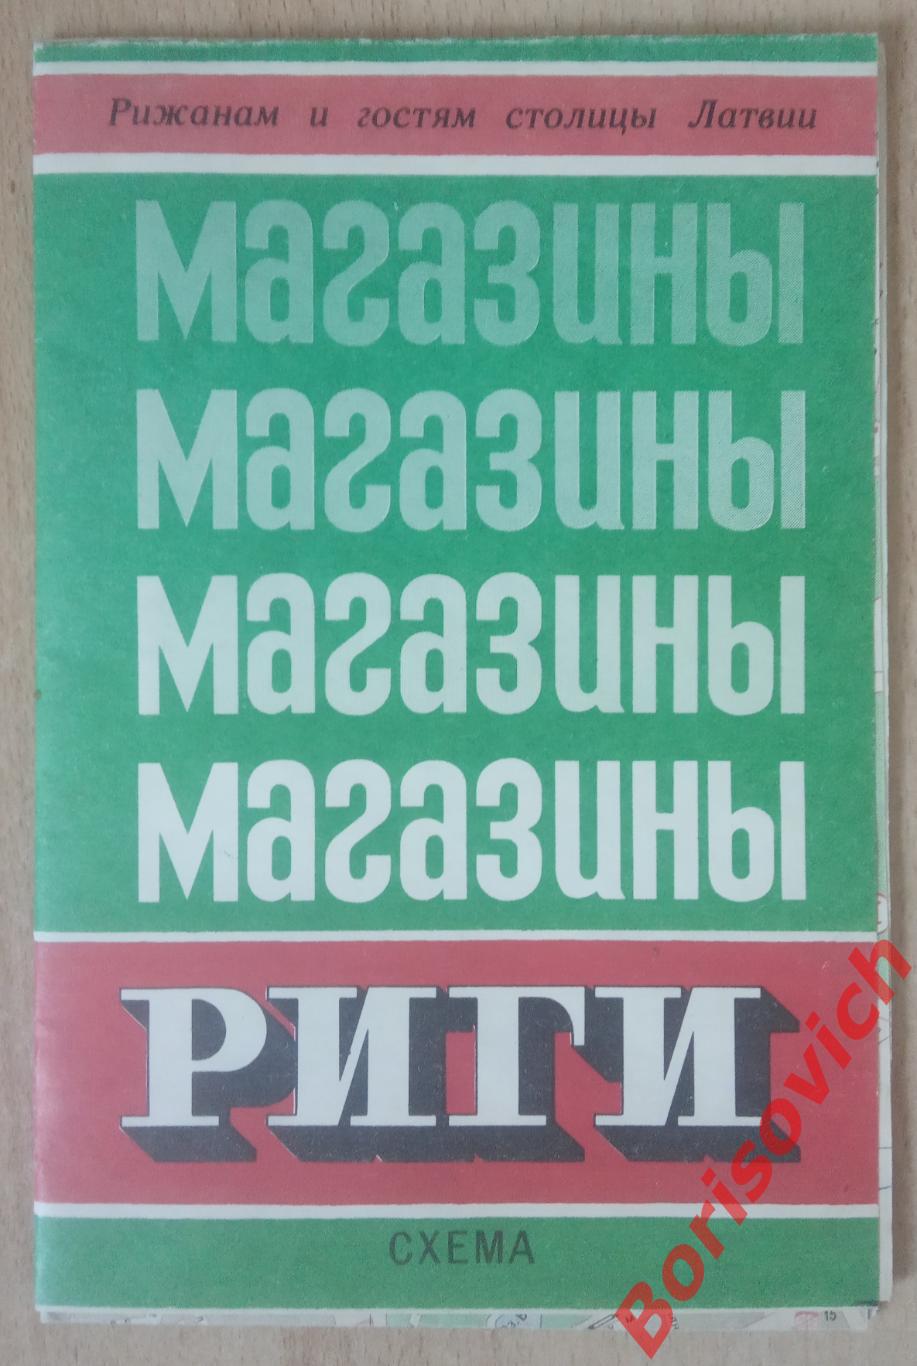 Магазины РИГИ Схема Рижанам и гостям столицы Латвии 1989 г